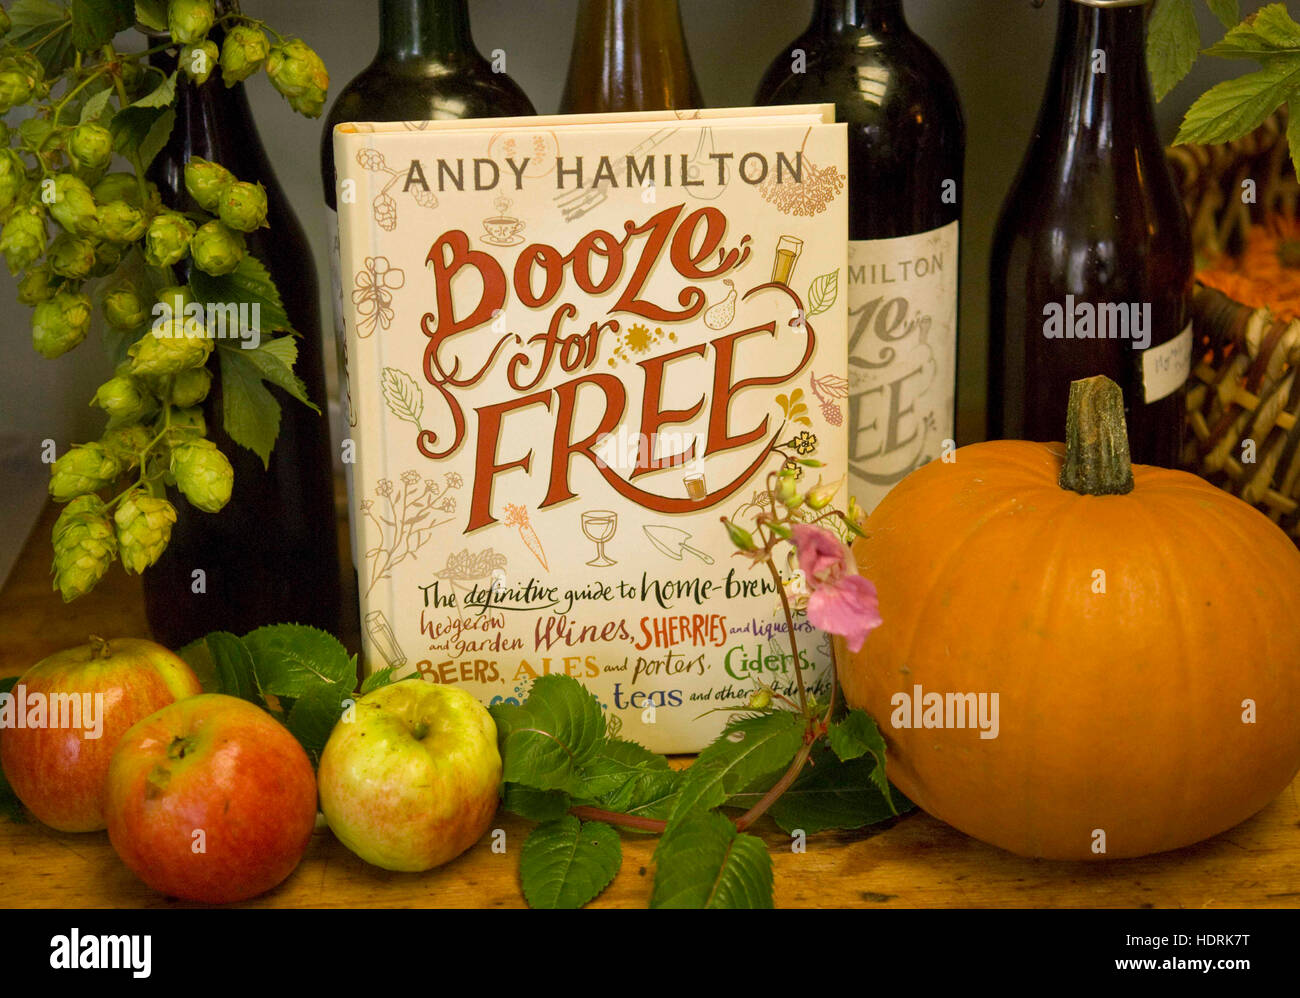 Andy hamilton fait ses propres esprits à la maison à partir de simples ingrédients de sa cuisine et a écrit un livre "L'alcool en libre'. Banque D'Images